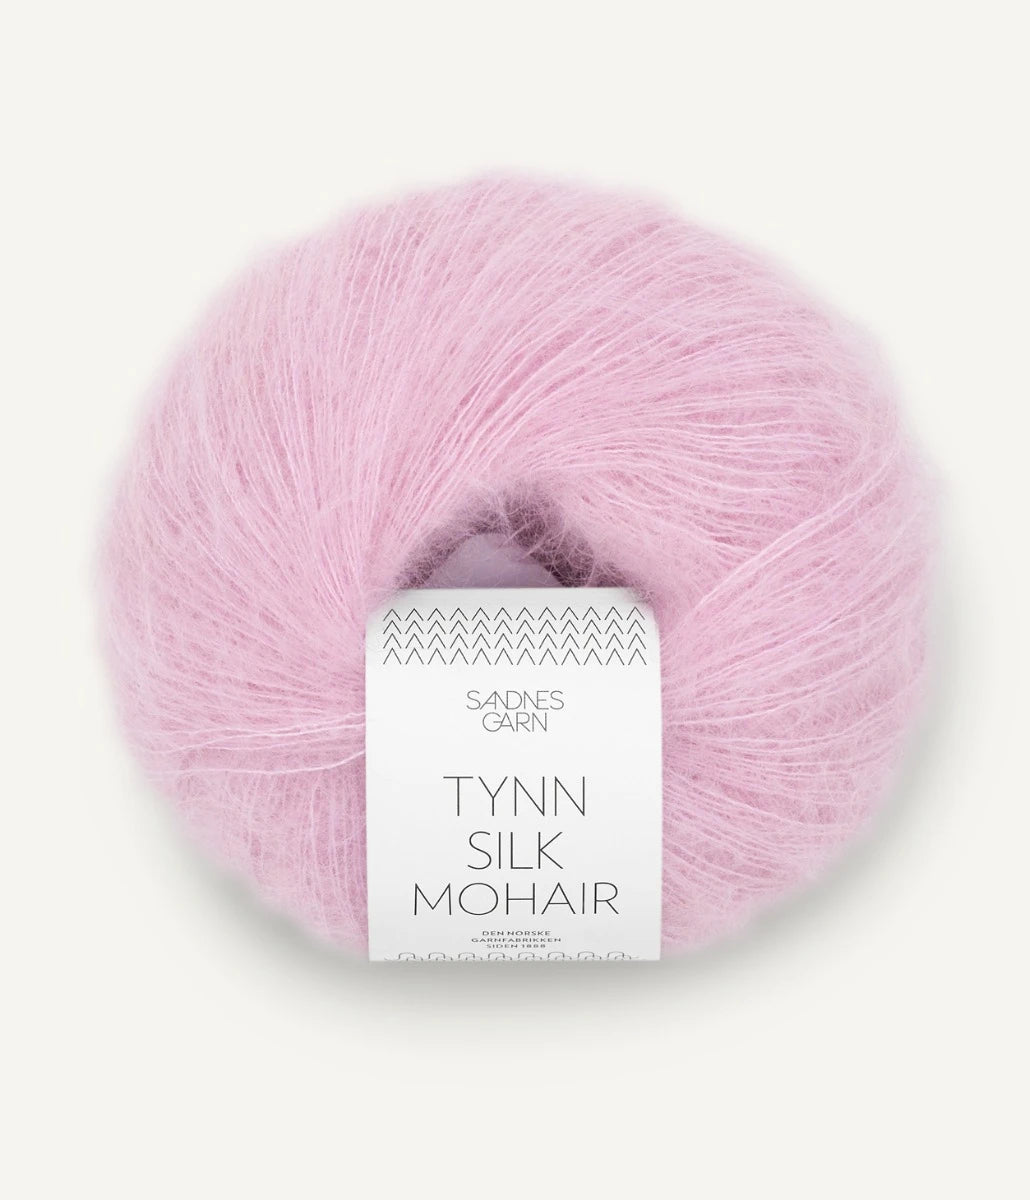 Kuvassa on Sandnes Garn Tynn Silk Mohair -lanka (yarn) värissä Pink Lilac.